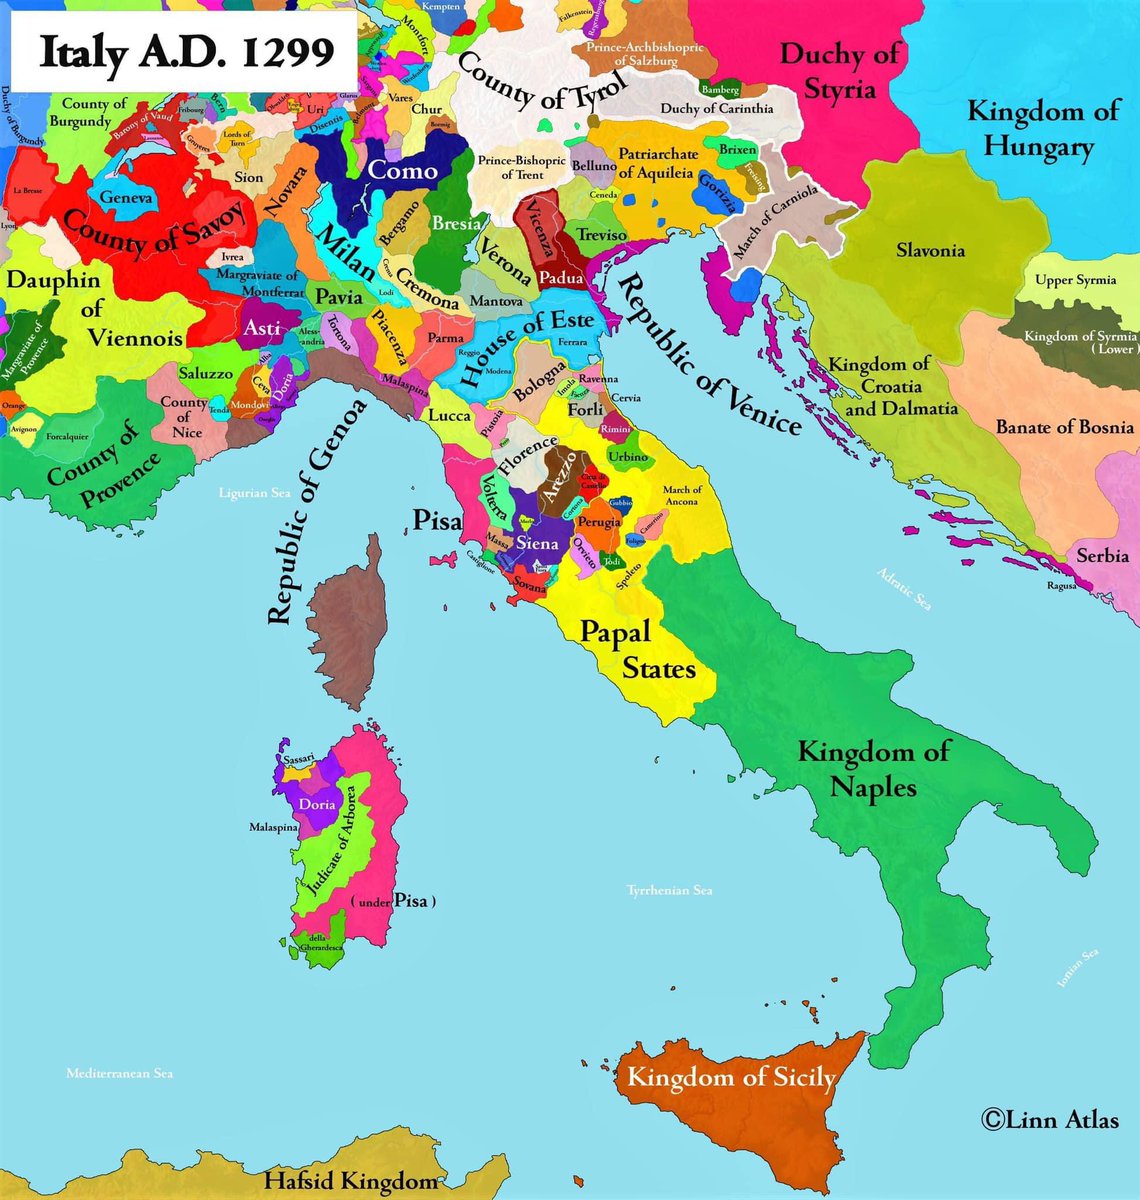 Italy, A.D. 1299